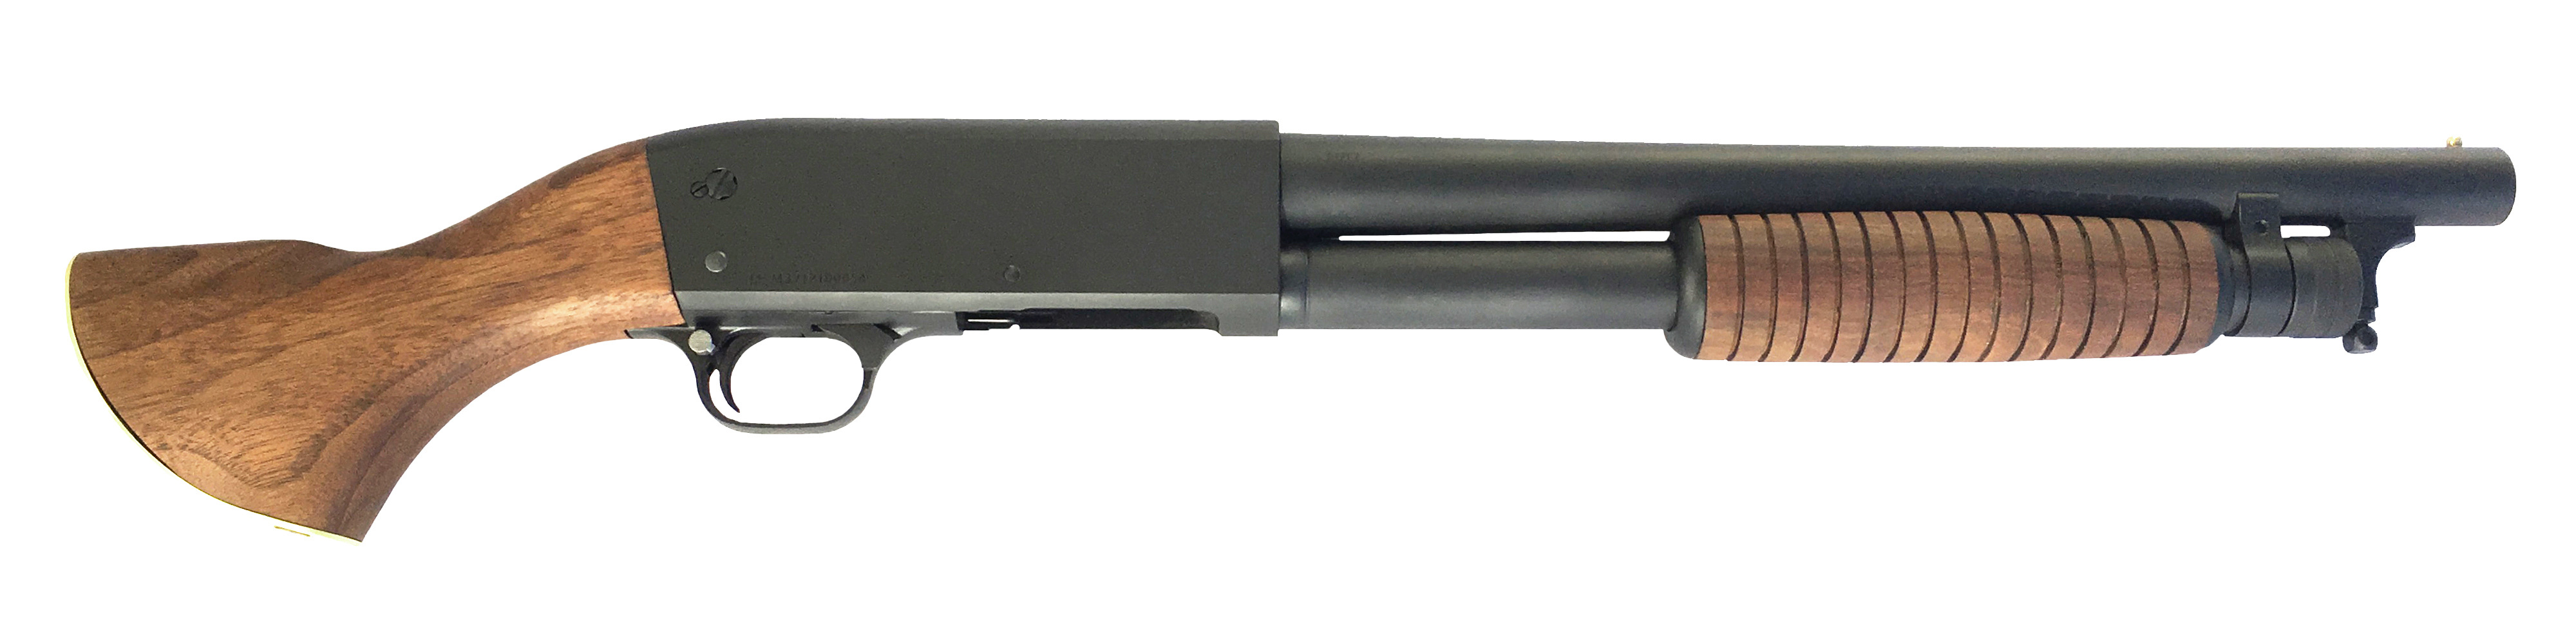 Ithaca Stakeout II, Pistol Grip Firearm